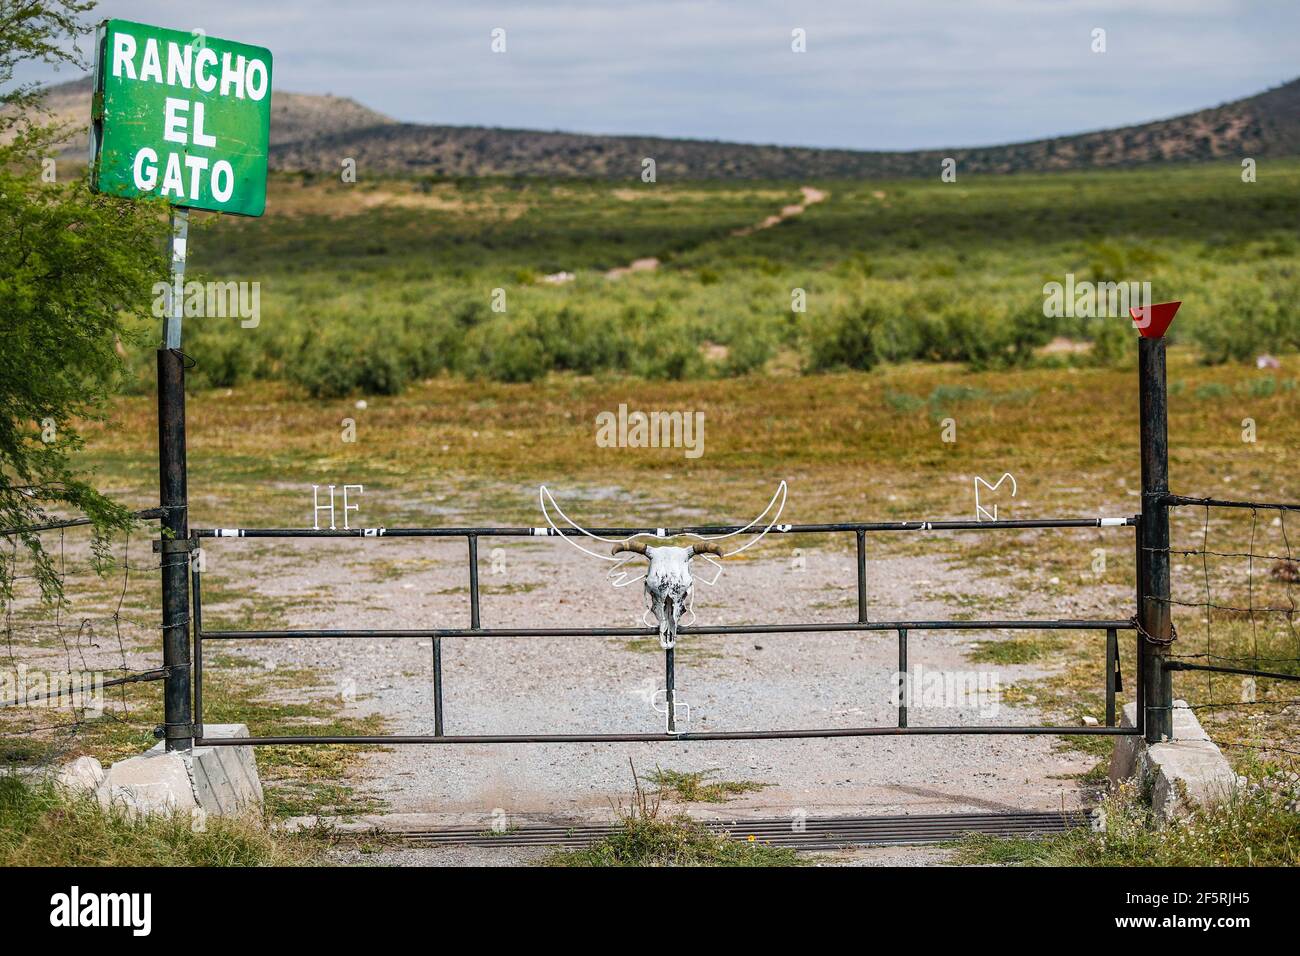 Entrance gate to the El Gato ranch in the surroundings of Janos, Chihuhua, Mexico. Green sign. metal gate, dead cow, dead bull. (Photo by Luis Gutierrez / Norte Photo)      Puerta de entrada al rancho El Gato en los alrededores de Janos, Chihuhua, Mexico. Letrero de color verde. puerta de metal , vaca muerta, toro muerto.   (Photo by Luis Gutierrez / Norte Photo) Stock Photo